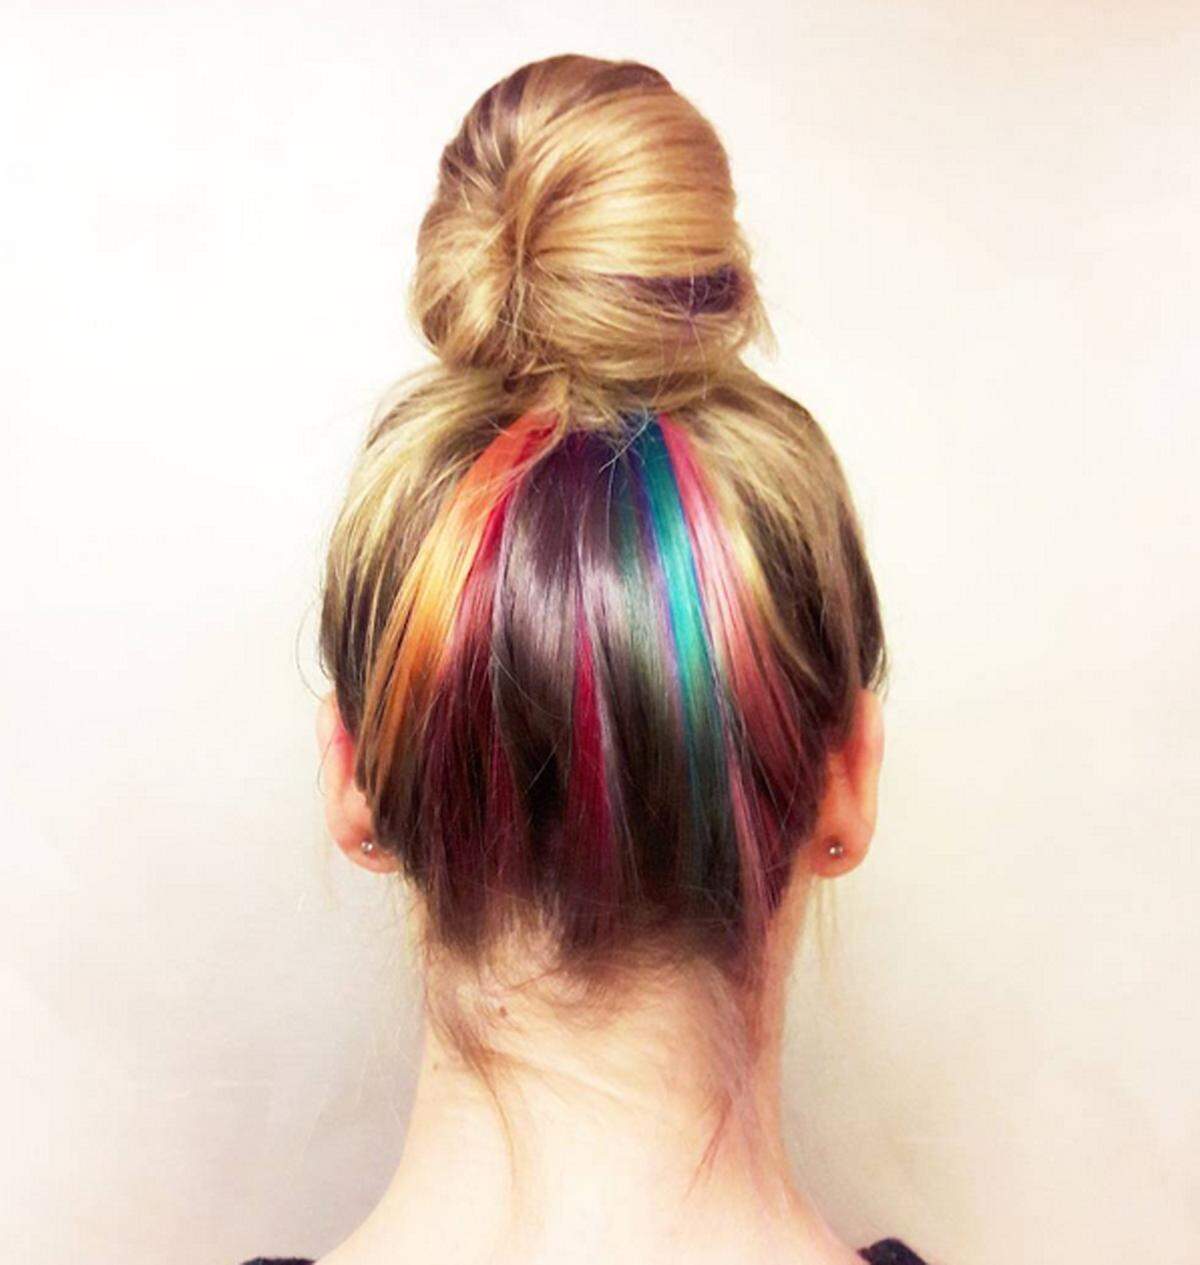 Nicht auf den ersten Blick zu sehen sind auch diese Regenbogen-Haare.